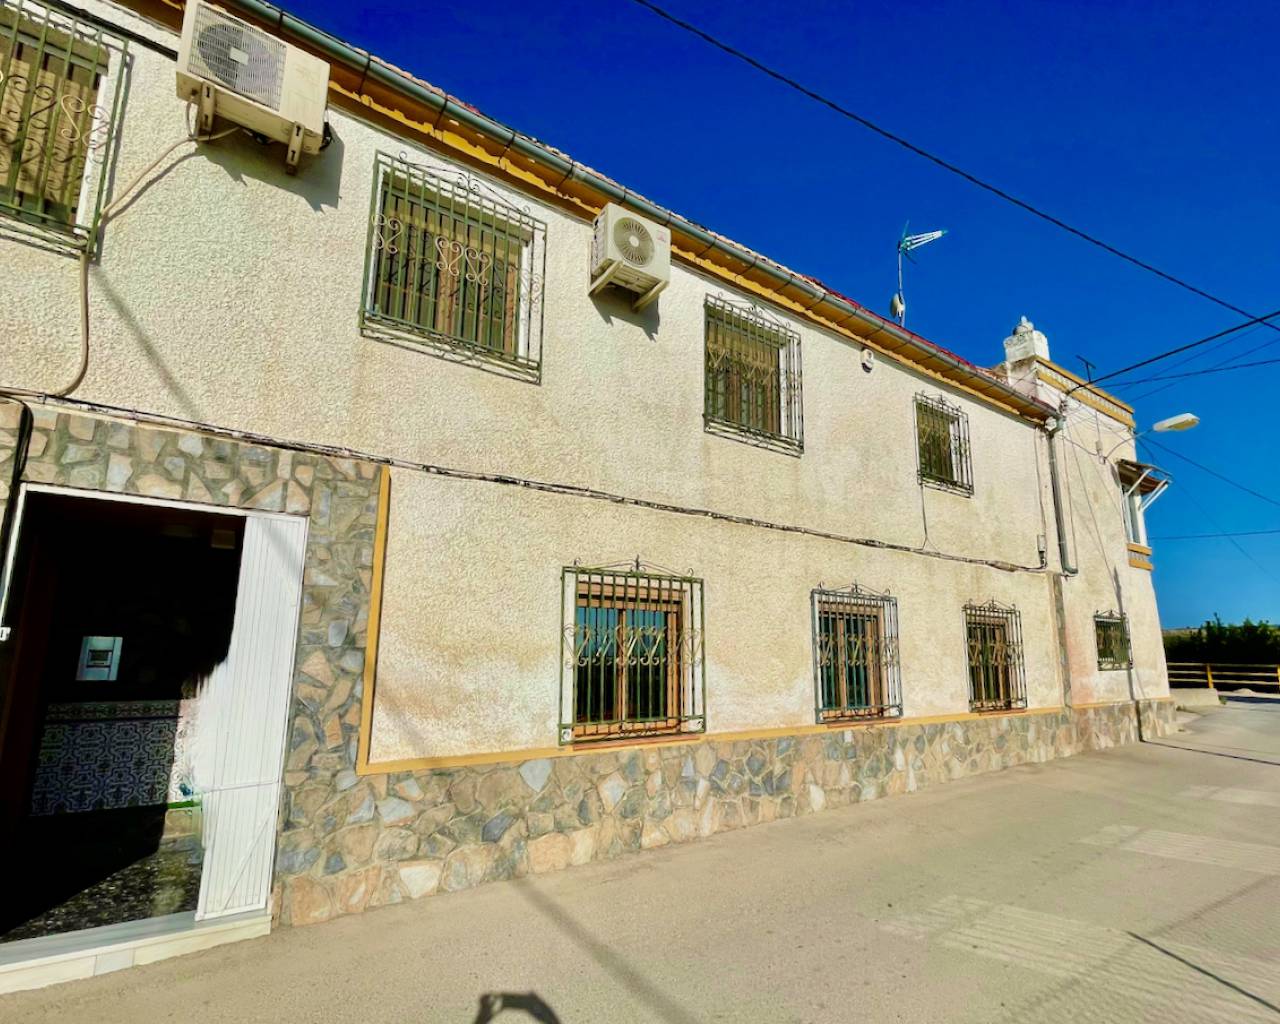 3 bedroom house / villa for sale in Orihuela, Costa Blanca